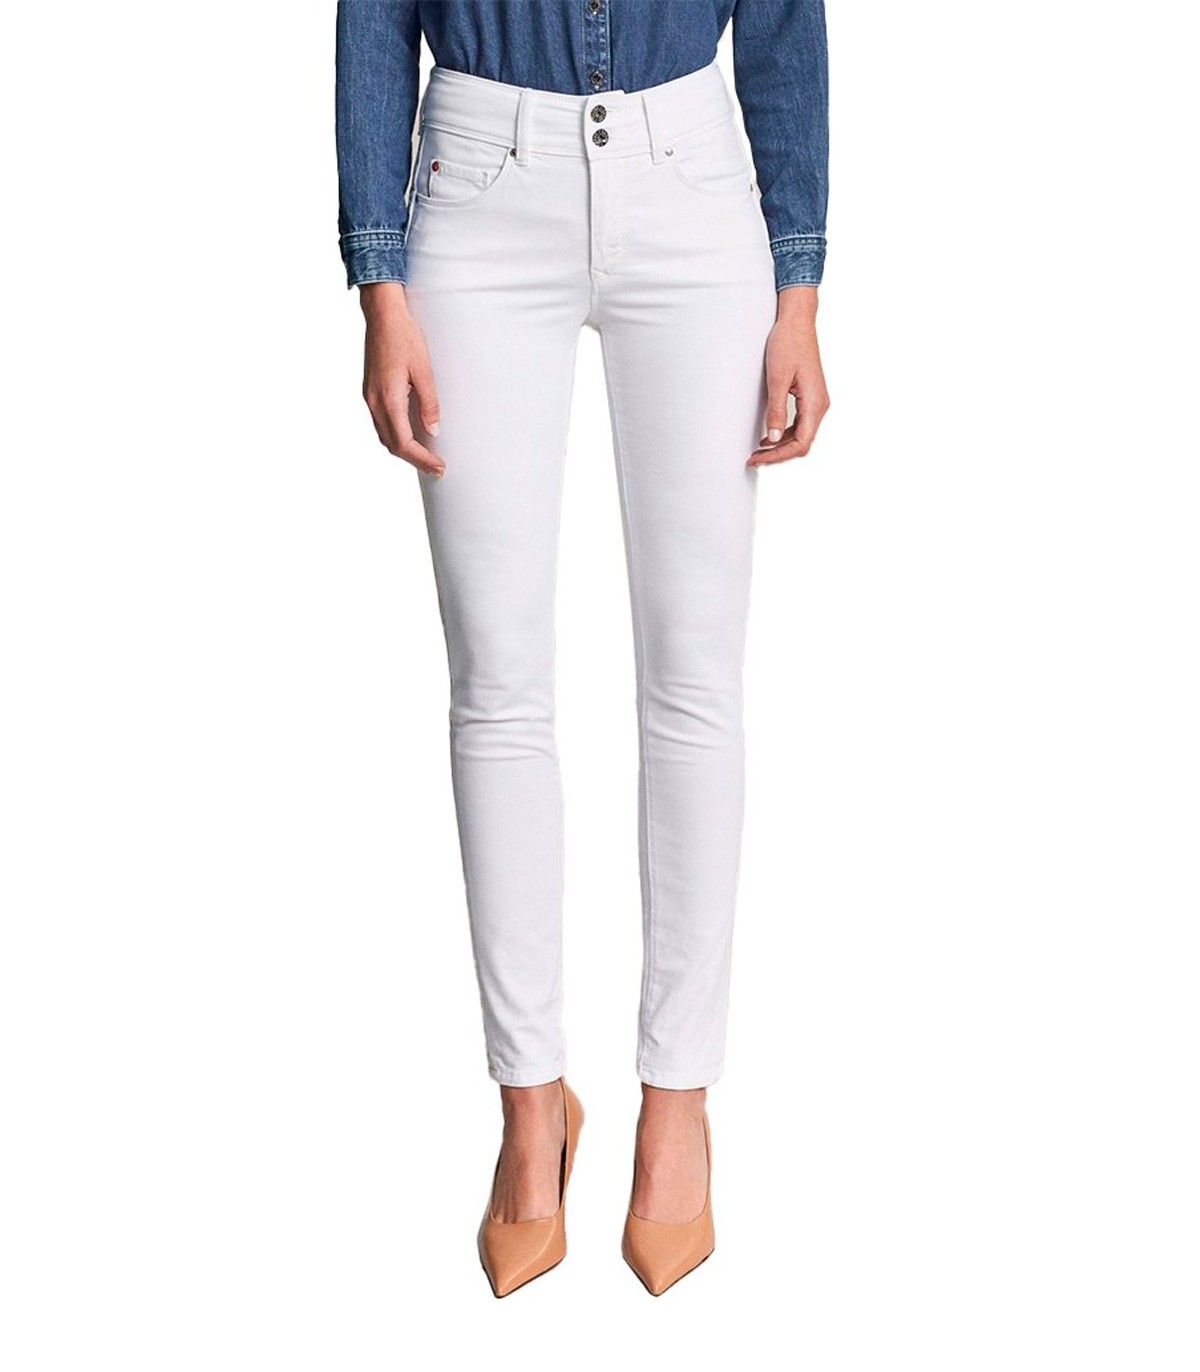 Salsa Jeans - Pantalón Vaquero para Mujer Blanco 29 Color BLANCO